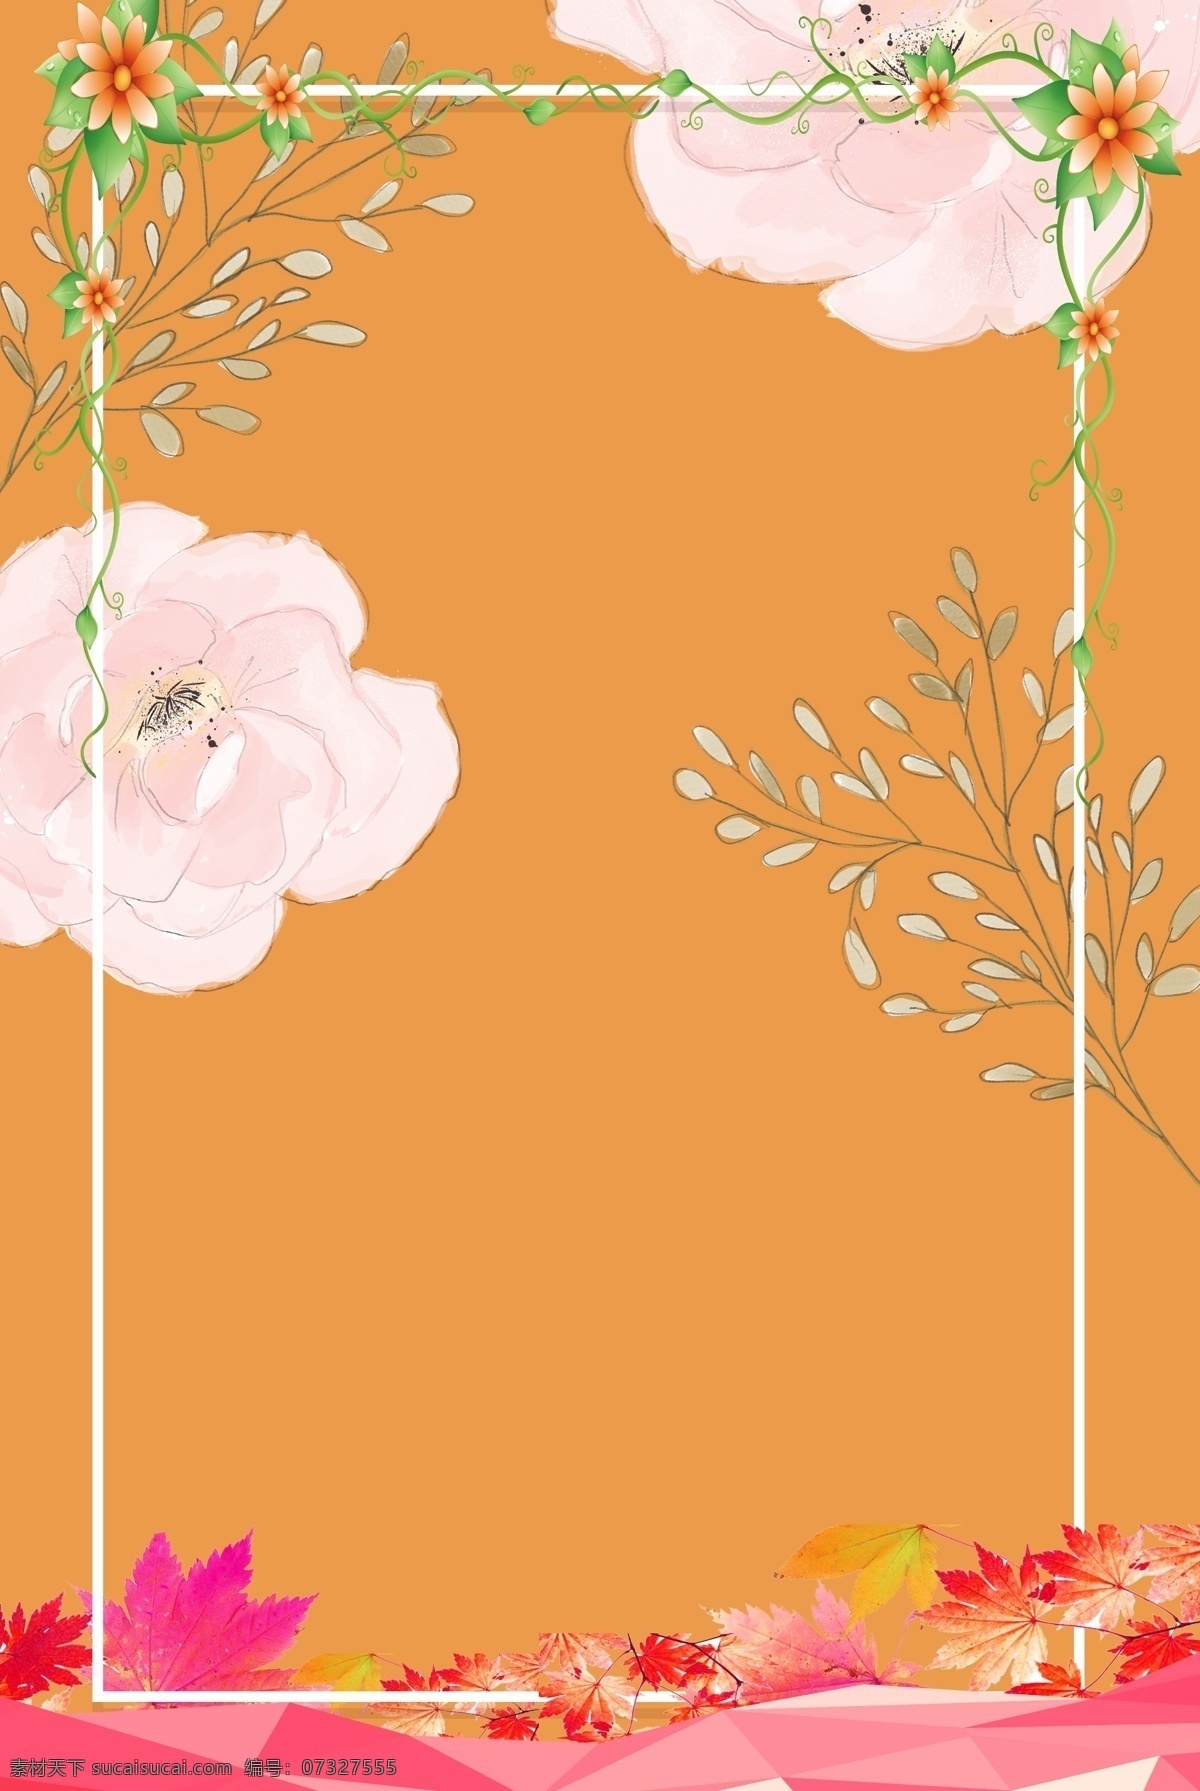 橙色 新颖 花朵 背景 图 边框 清新 原创 文艺 质感 纹理 简约 极简 扁平 海报